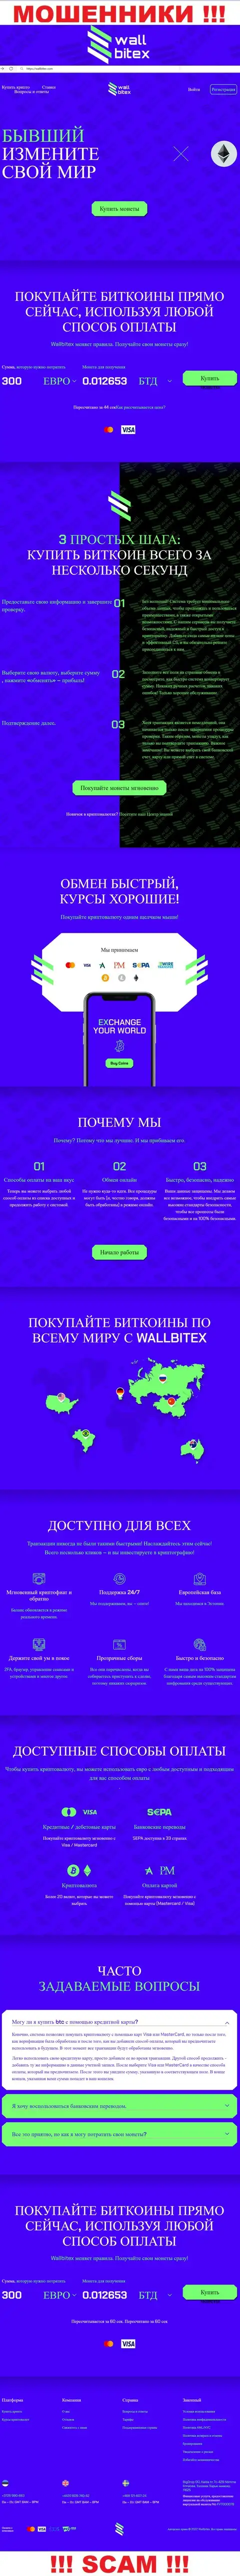 WallBitex Com - это официальный web-ресурс неправомерно действующей организации WallBitex